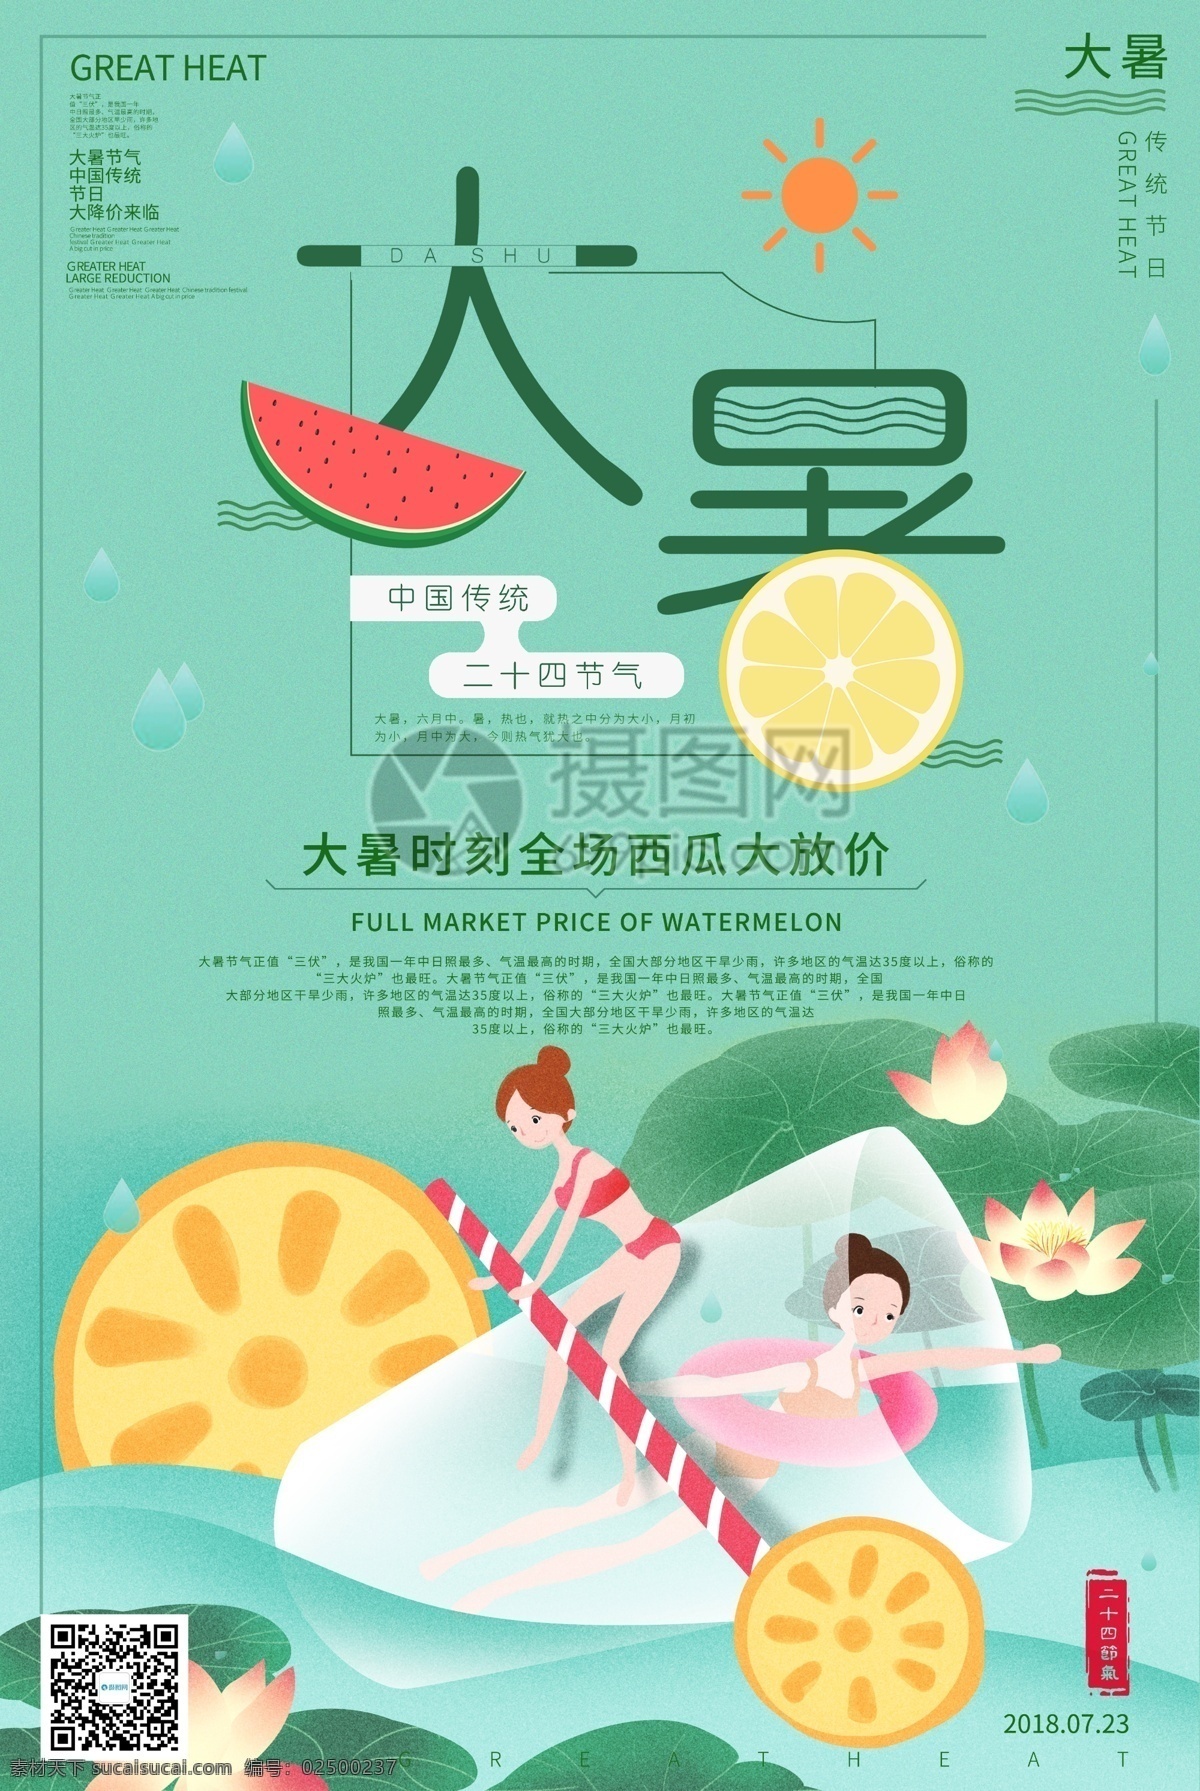 二十四节气 大暑 海报 绿色 荷花 中国传统节日 之一 人物插画 节日海报 节日设计海报